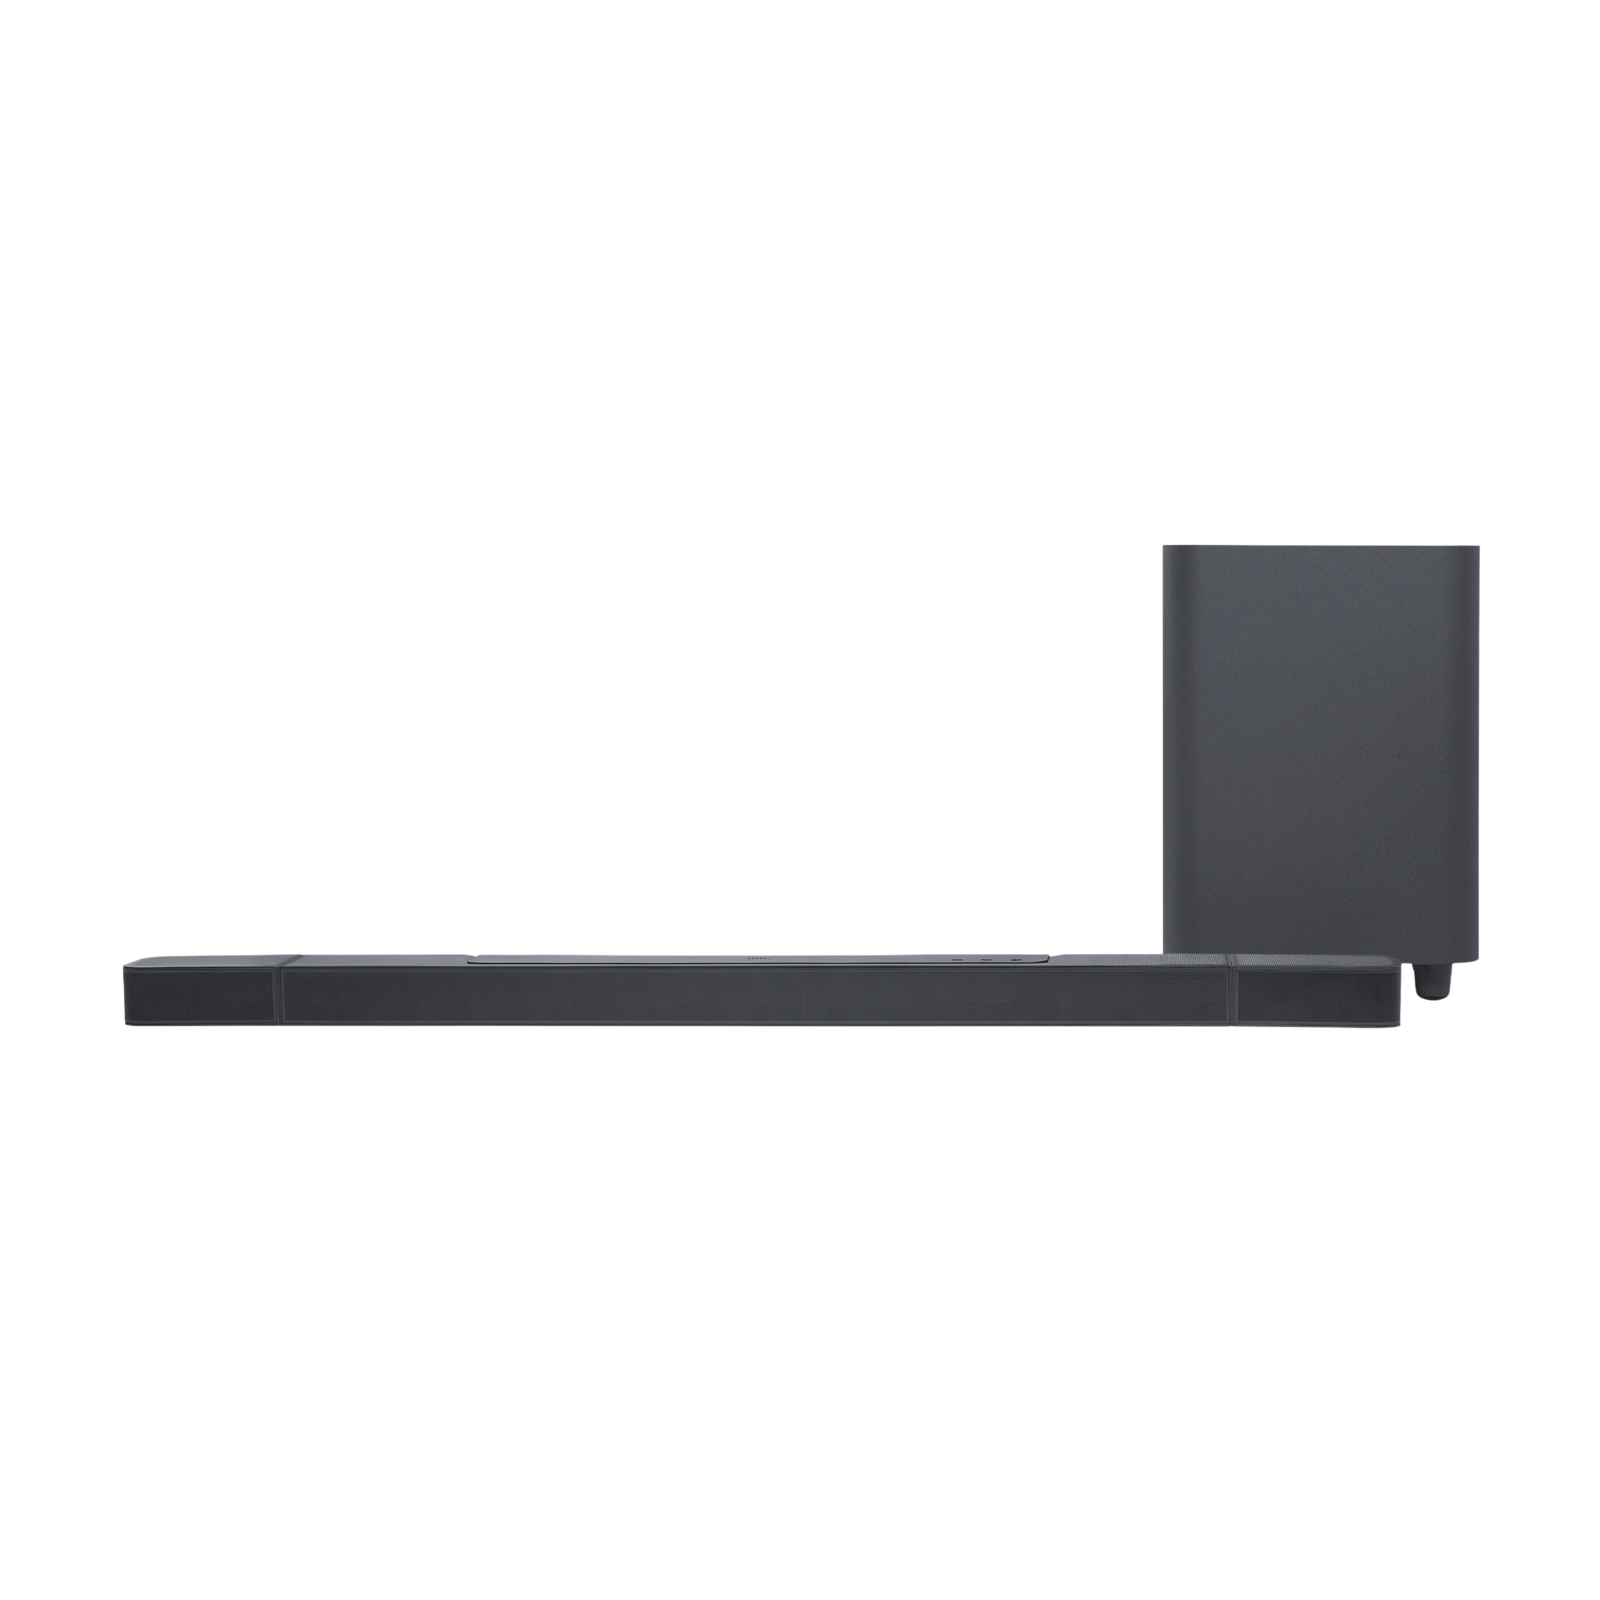 JBL Bar 1000 Pro 880W Soundbar with Remote (Dolby Atmos, 7.1.4 Channel, Black)